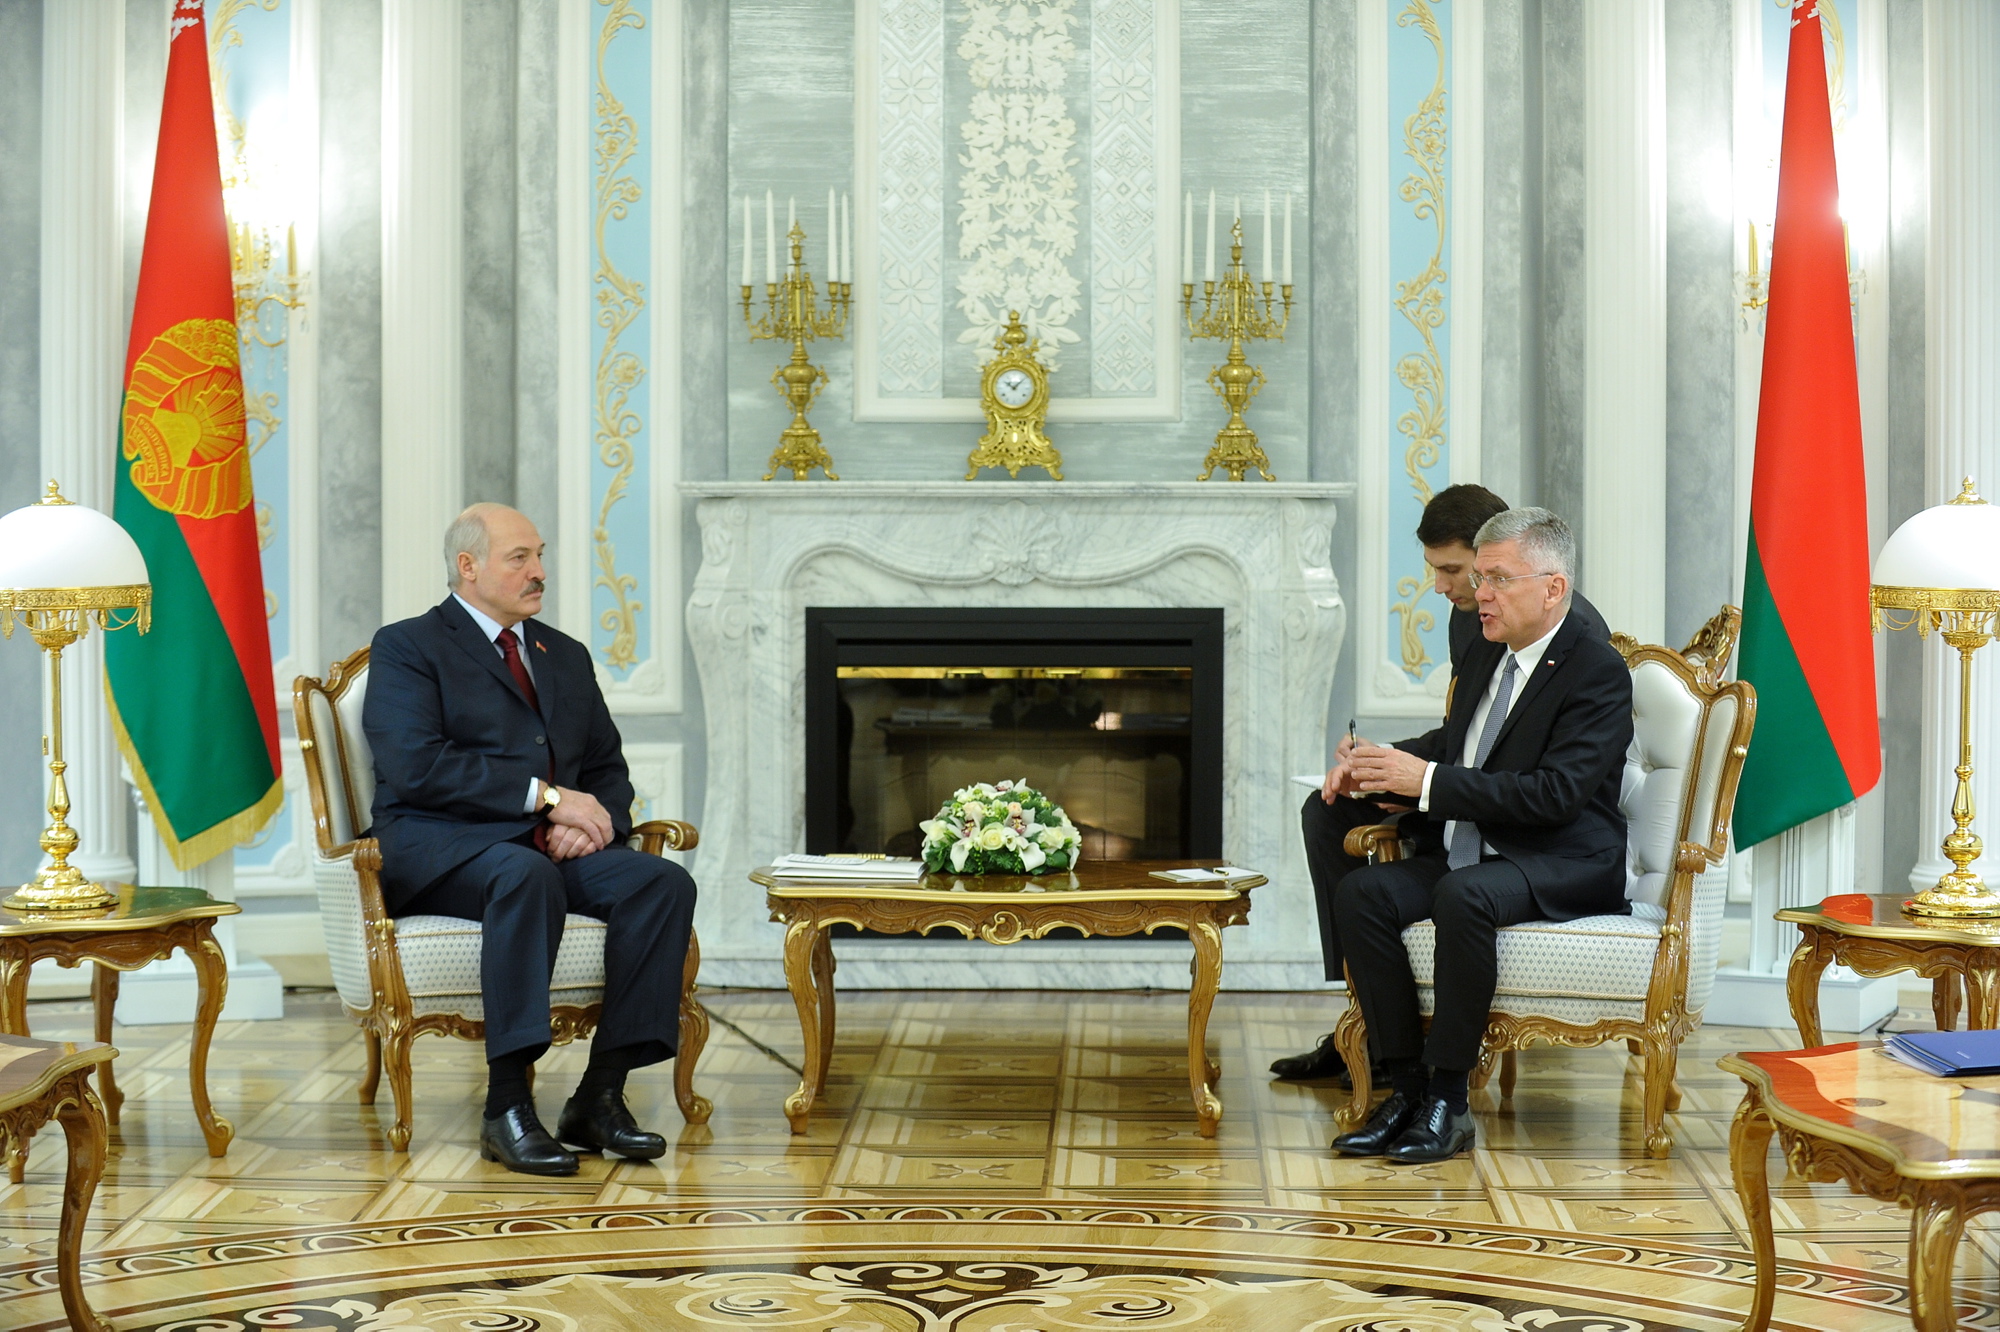 Marszałek Senatu Stanisław Karczewski podczas spotkania z prezydentem Republiki Białoruskiej Alaksandrem Łukaszenką, Mińsk, grudzień 2016 r